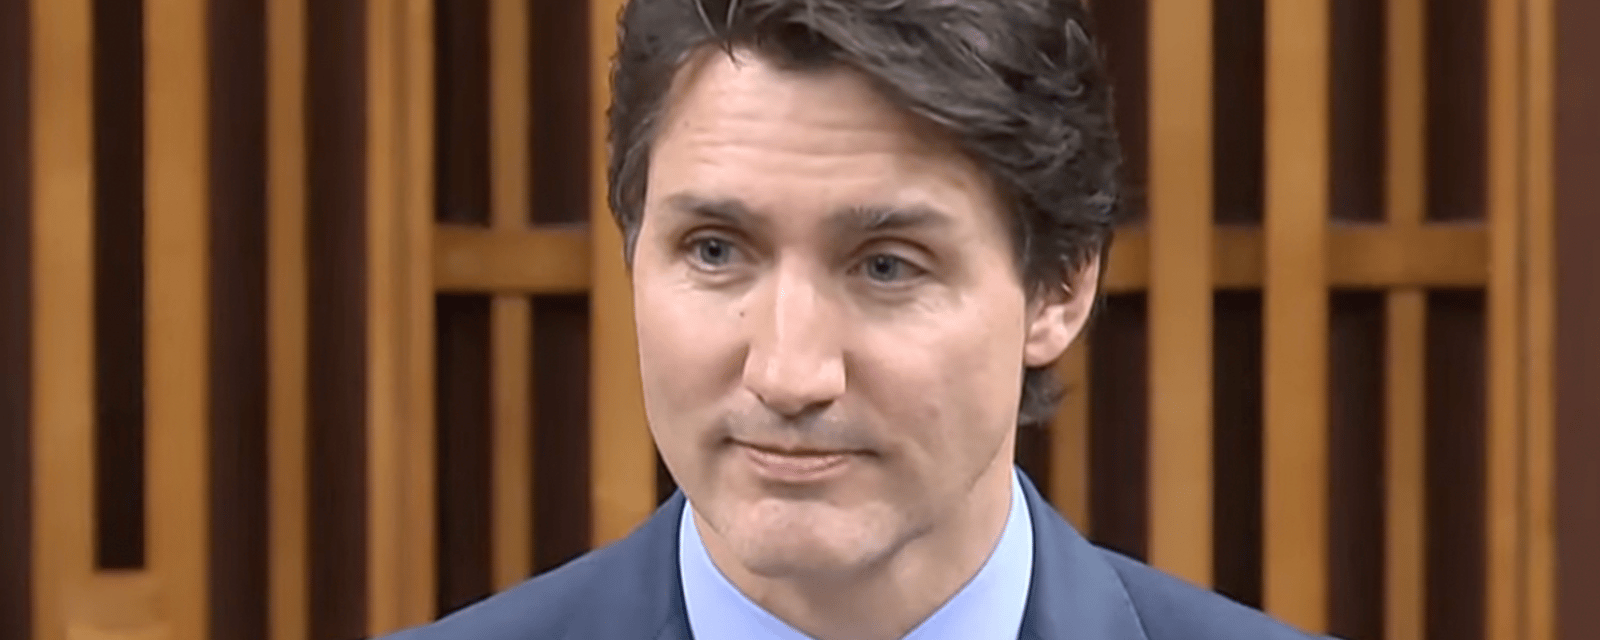 Justin Trudeau dans l'eau chaude après la découverte d'une dépense jugée astronomique